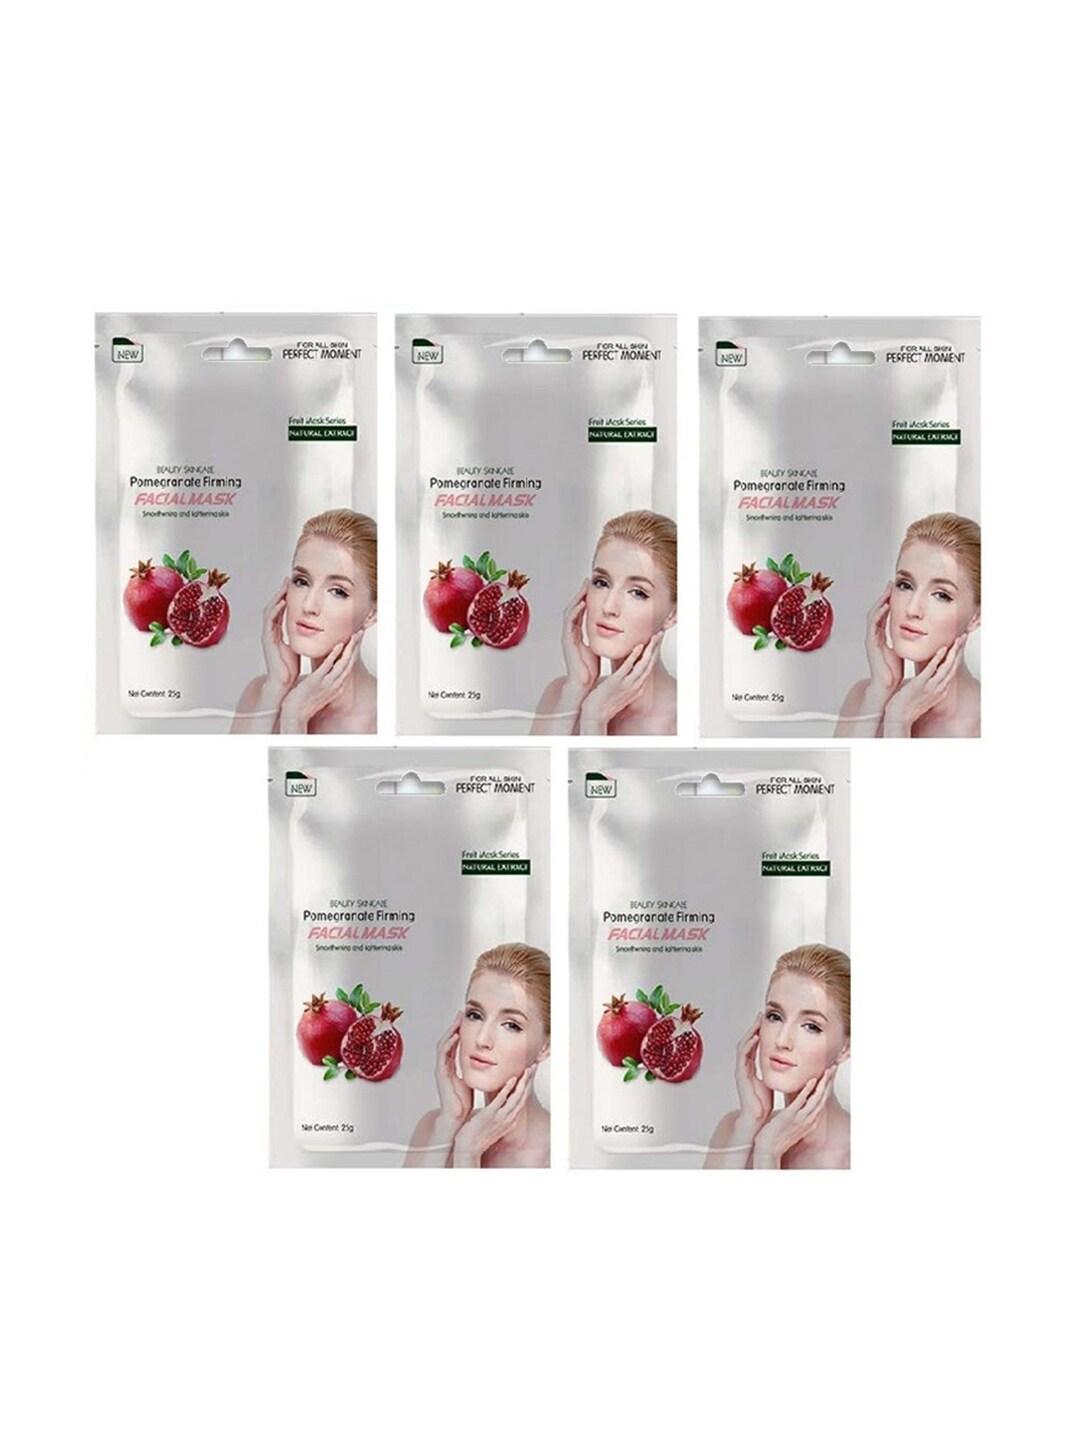 MONDSUB Set of 5 Pomegranate Firming Face Sheet Masks - 25g each